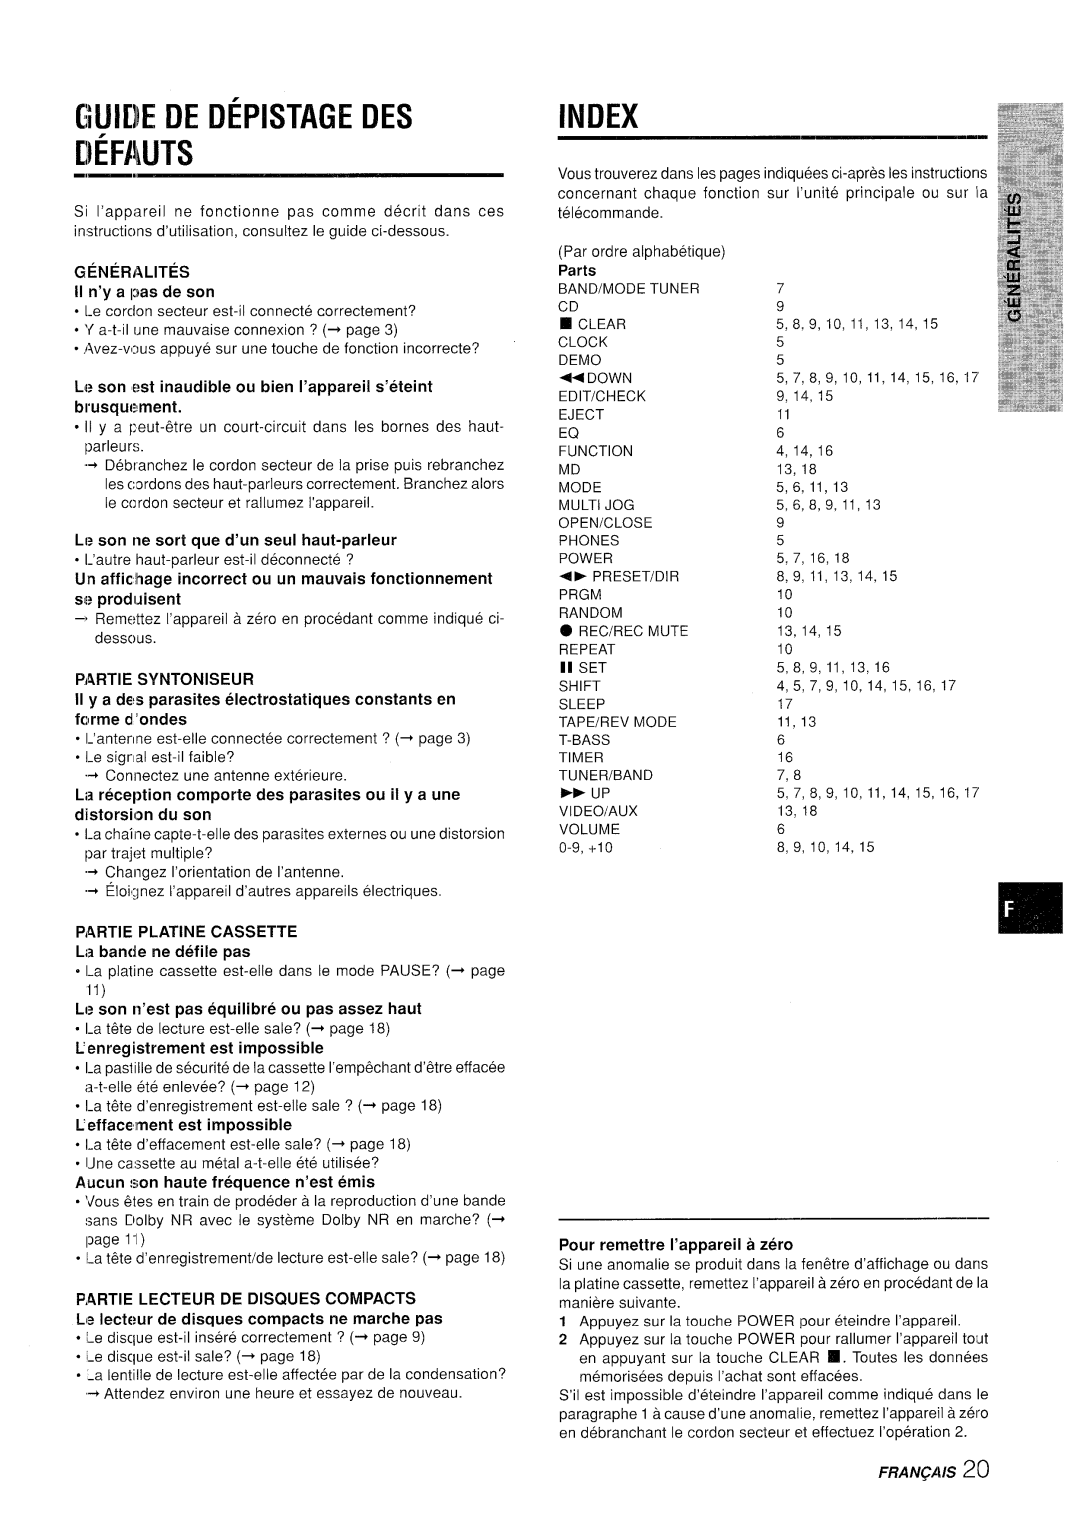 Aiwa XR-M35 manual Mjiiiie De Depistage Des Iiefauts, Index, GENERALITES II n’y a pas de son, Partie Syntoniseur, Parts 